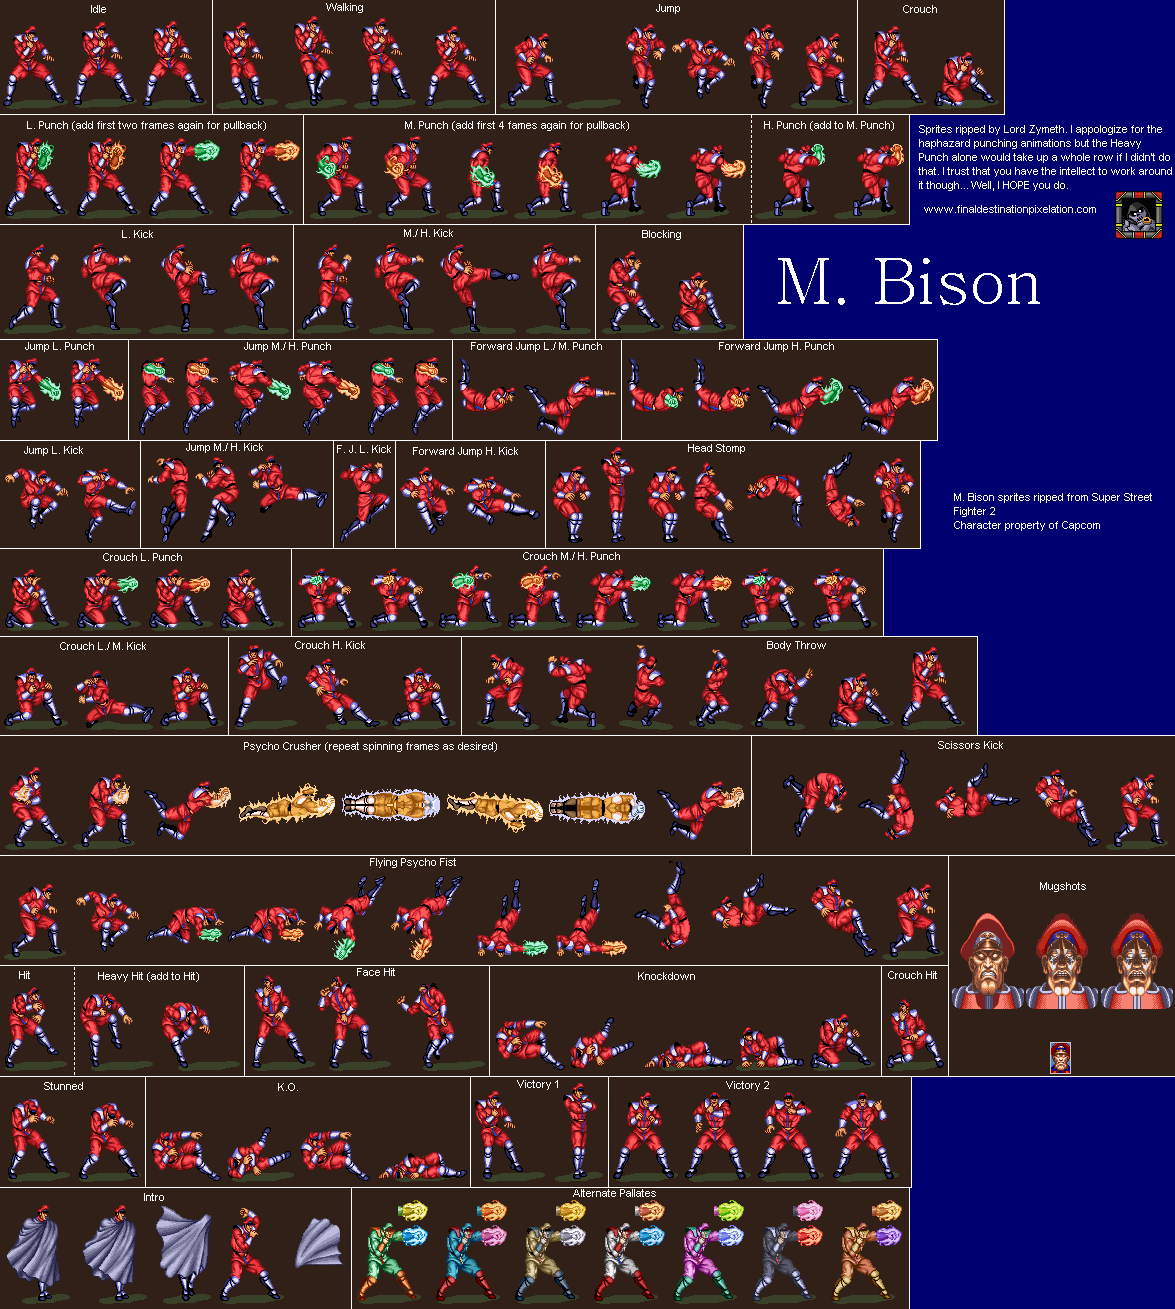 M. Bison